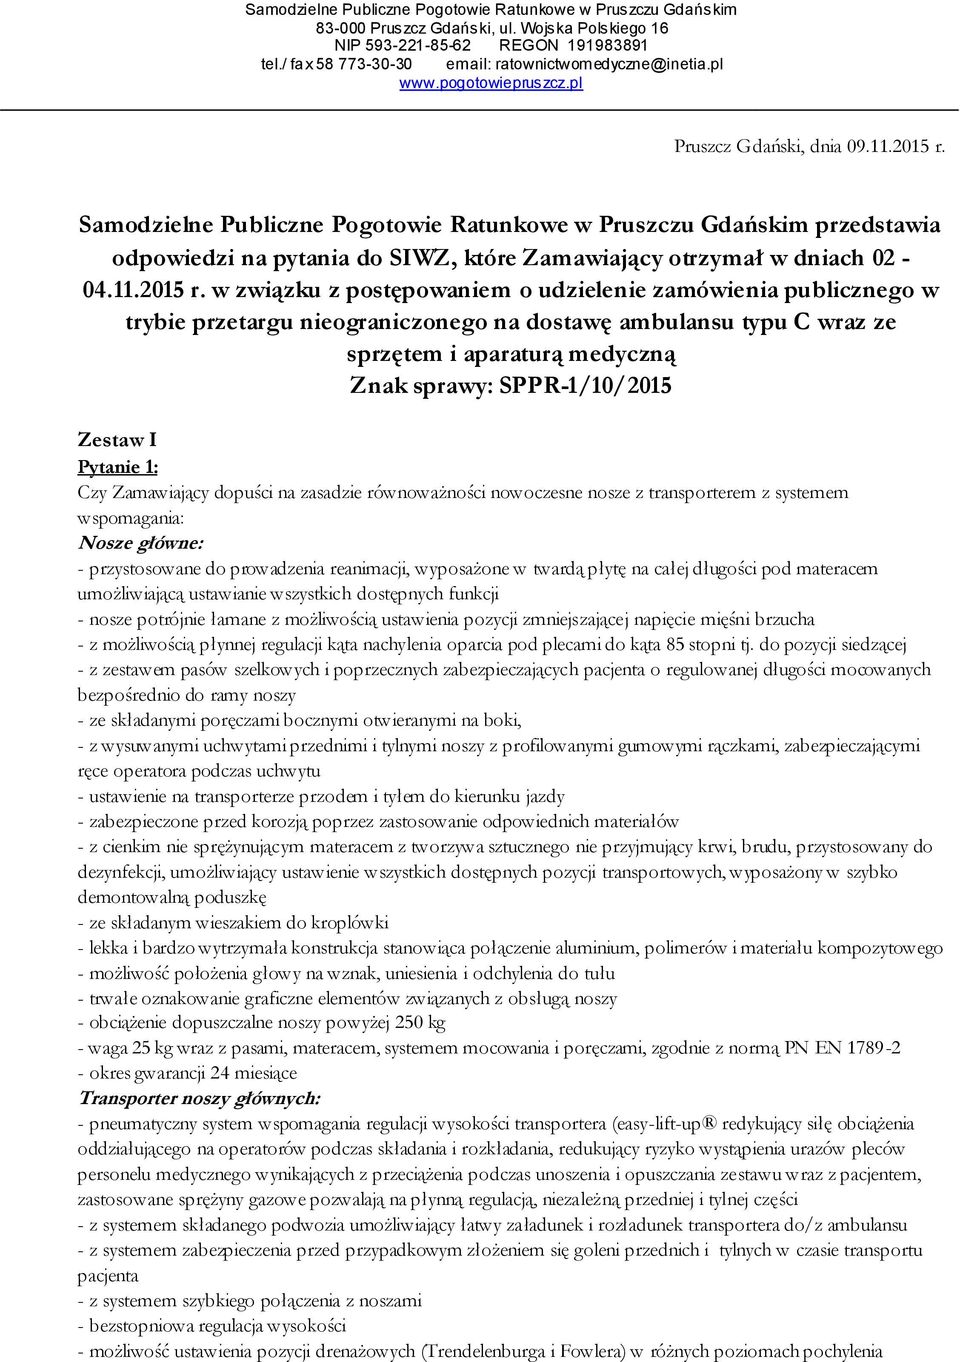 Samodzielne Publiczne Pogotowie Ratunkowe w Pruszczu Gdańskim przedstawia odpowiedzi na pytania do SIWZ, które Zamawiający otrzymał w dniach 02-04.11.2015 r.